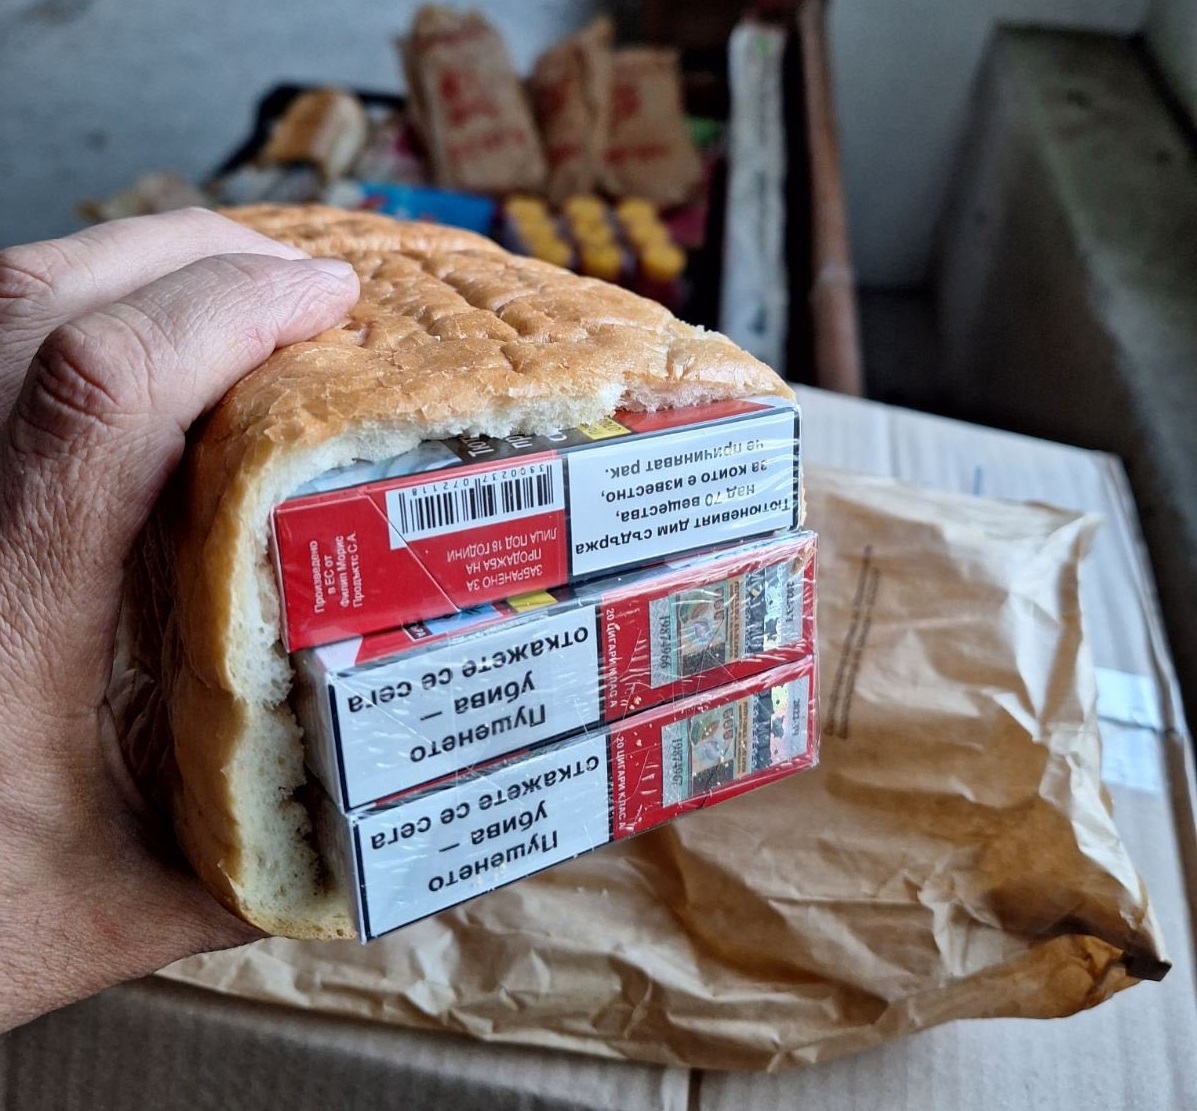 Сподели61 160 къса (3058 кутии) цигари, скрити в хляб, задържаха